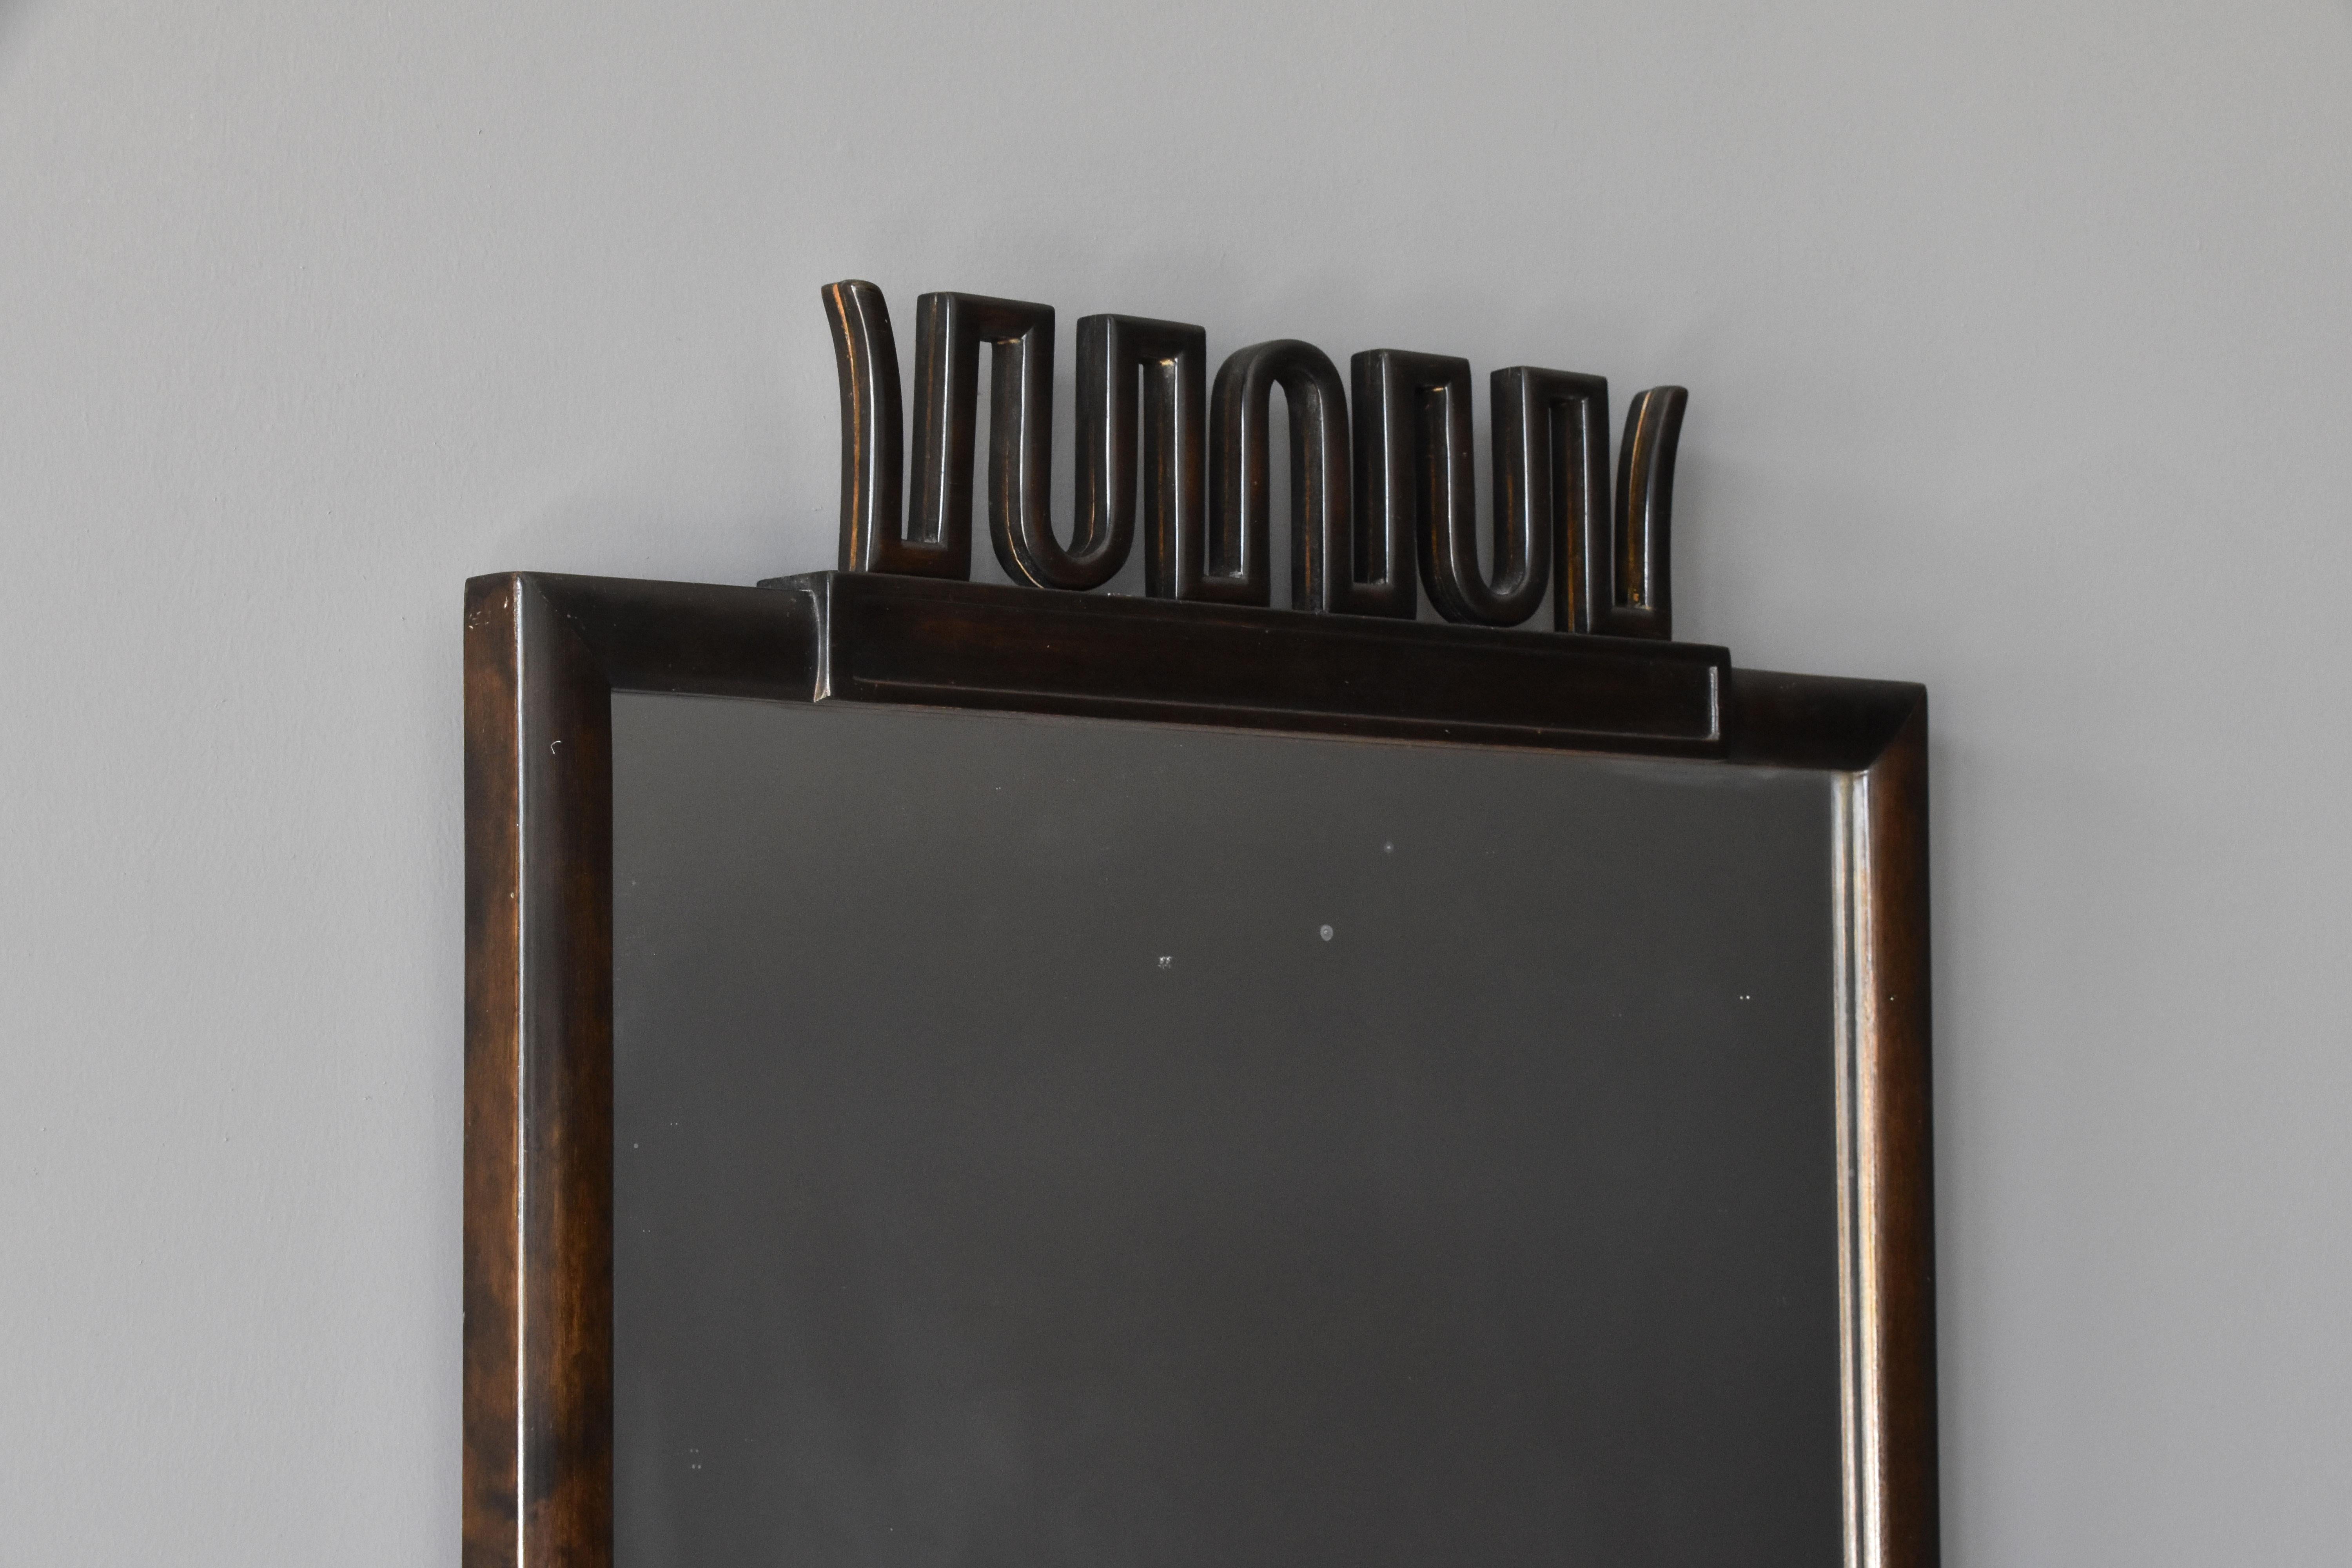 Axel Einar Hjorth, Rare Mirror, Stained Birch, Nordiska Kompaniet, Sweden, 1927 (Skandinavische Moderne)